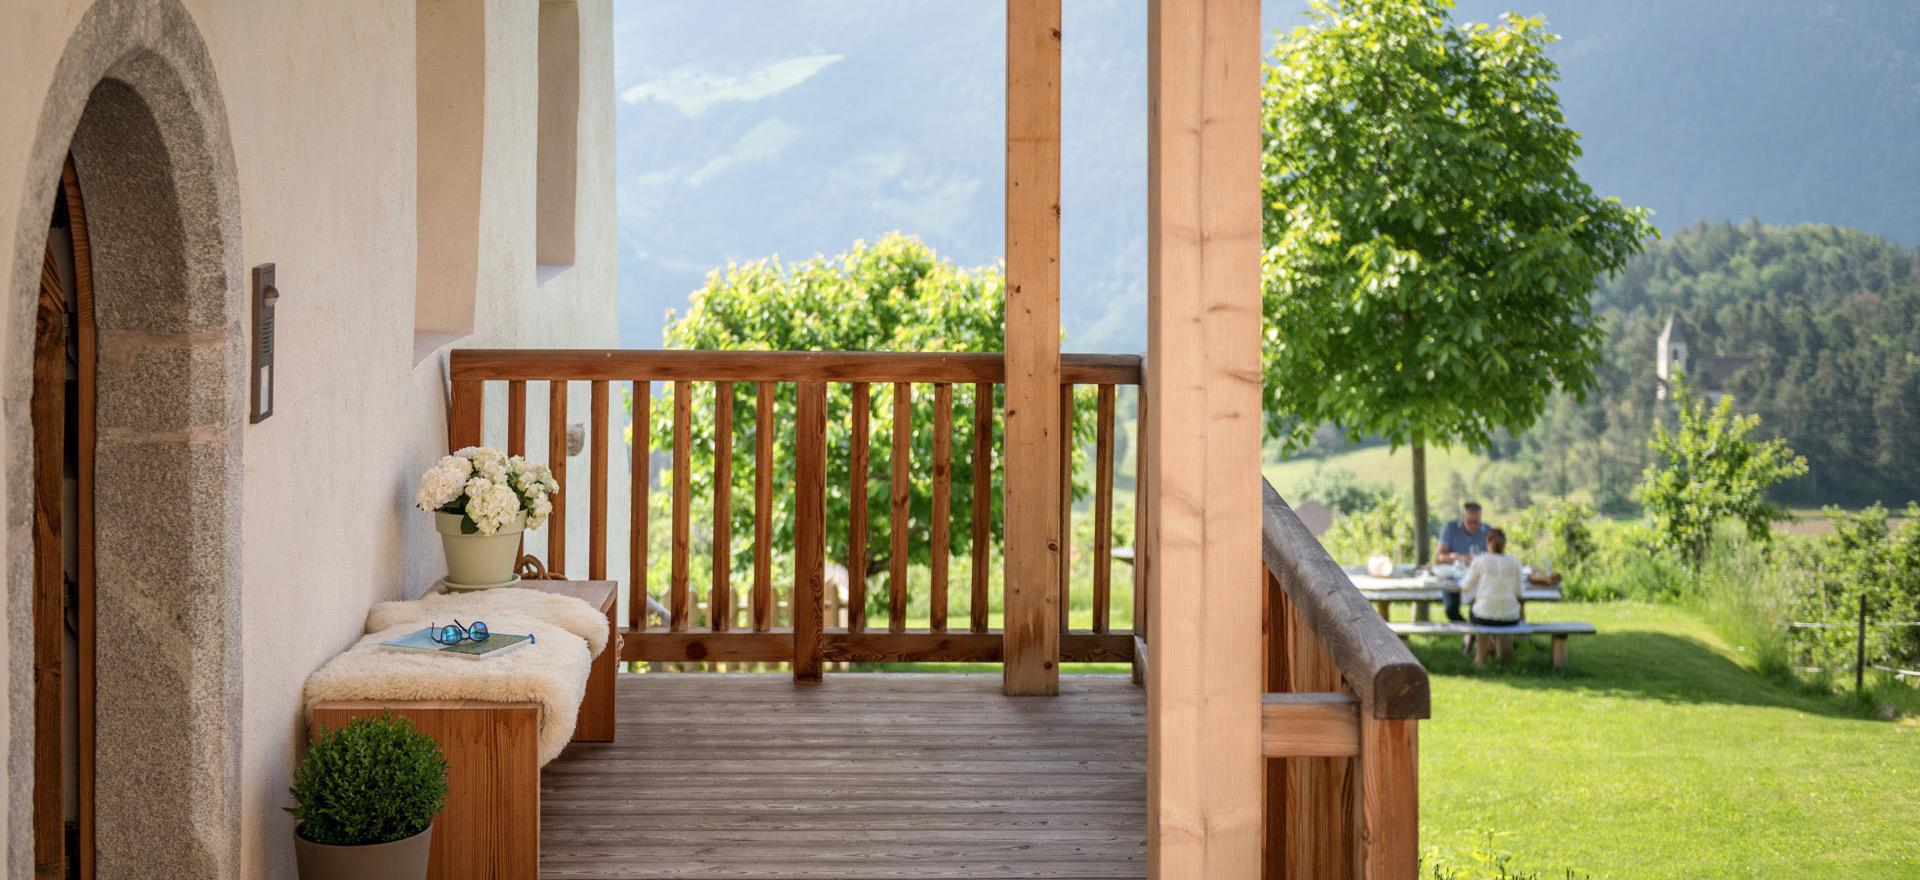 Agriturismo Dolomieten Sudtiroler gastvrijheid in een luxe agritursmo met kamers B&B